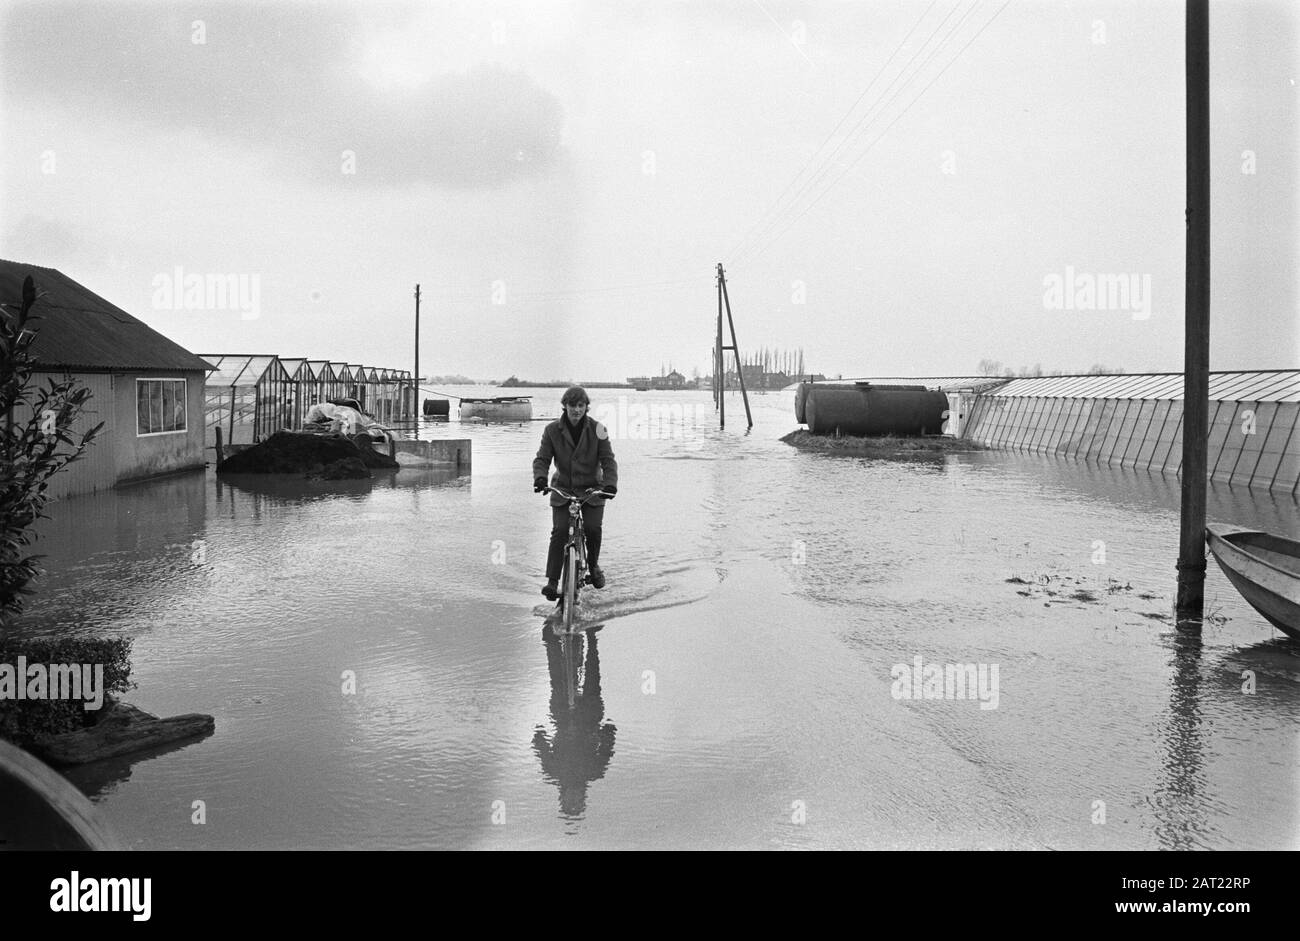 Waternuisance dans le Limbourg en raison de la position élevée de la Meuse. Serres dans l'eau, homme à vélo dans l'eau, Puits Date: 25 février 1970 lieu: Limbourg, Puits mots clés: Inondations? Banque D'Images